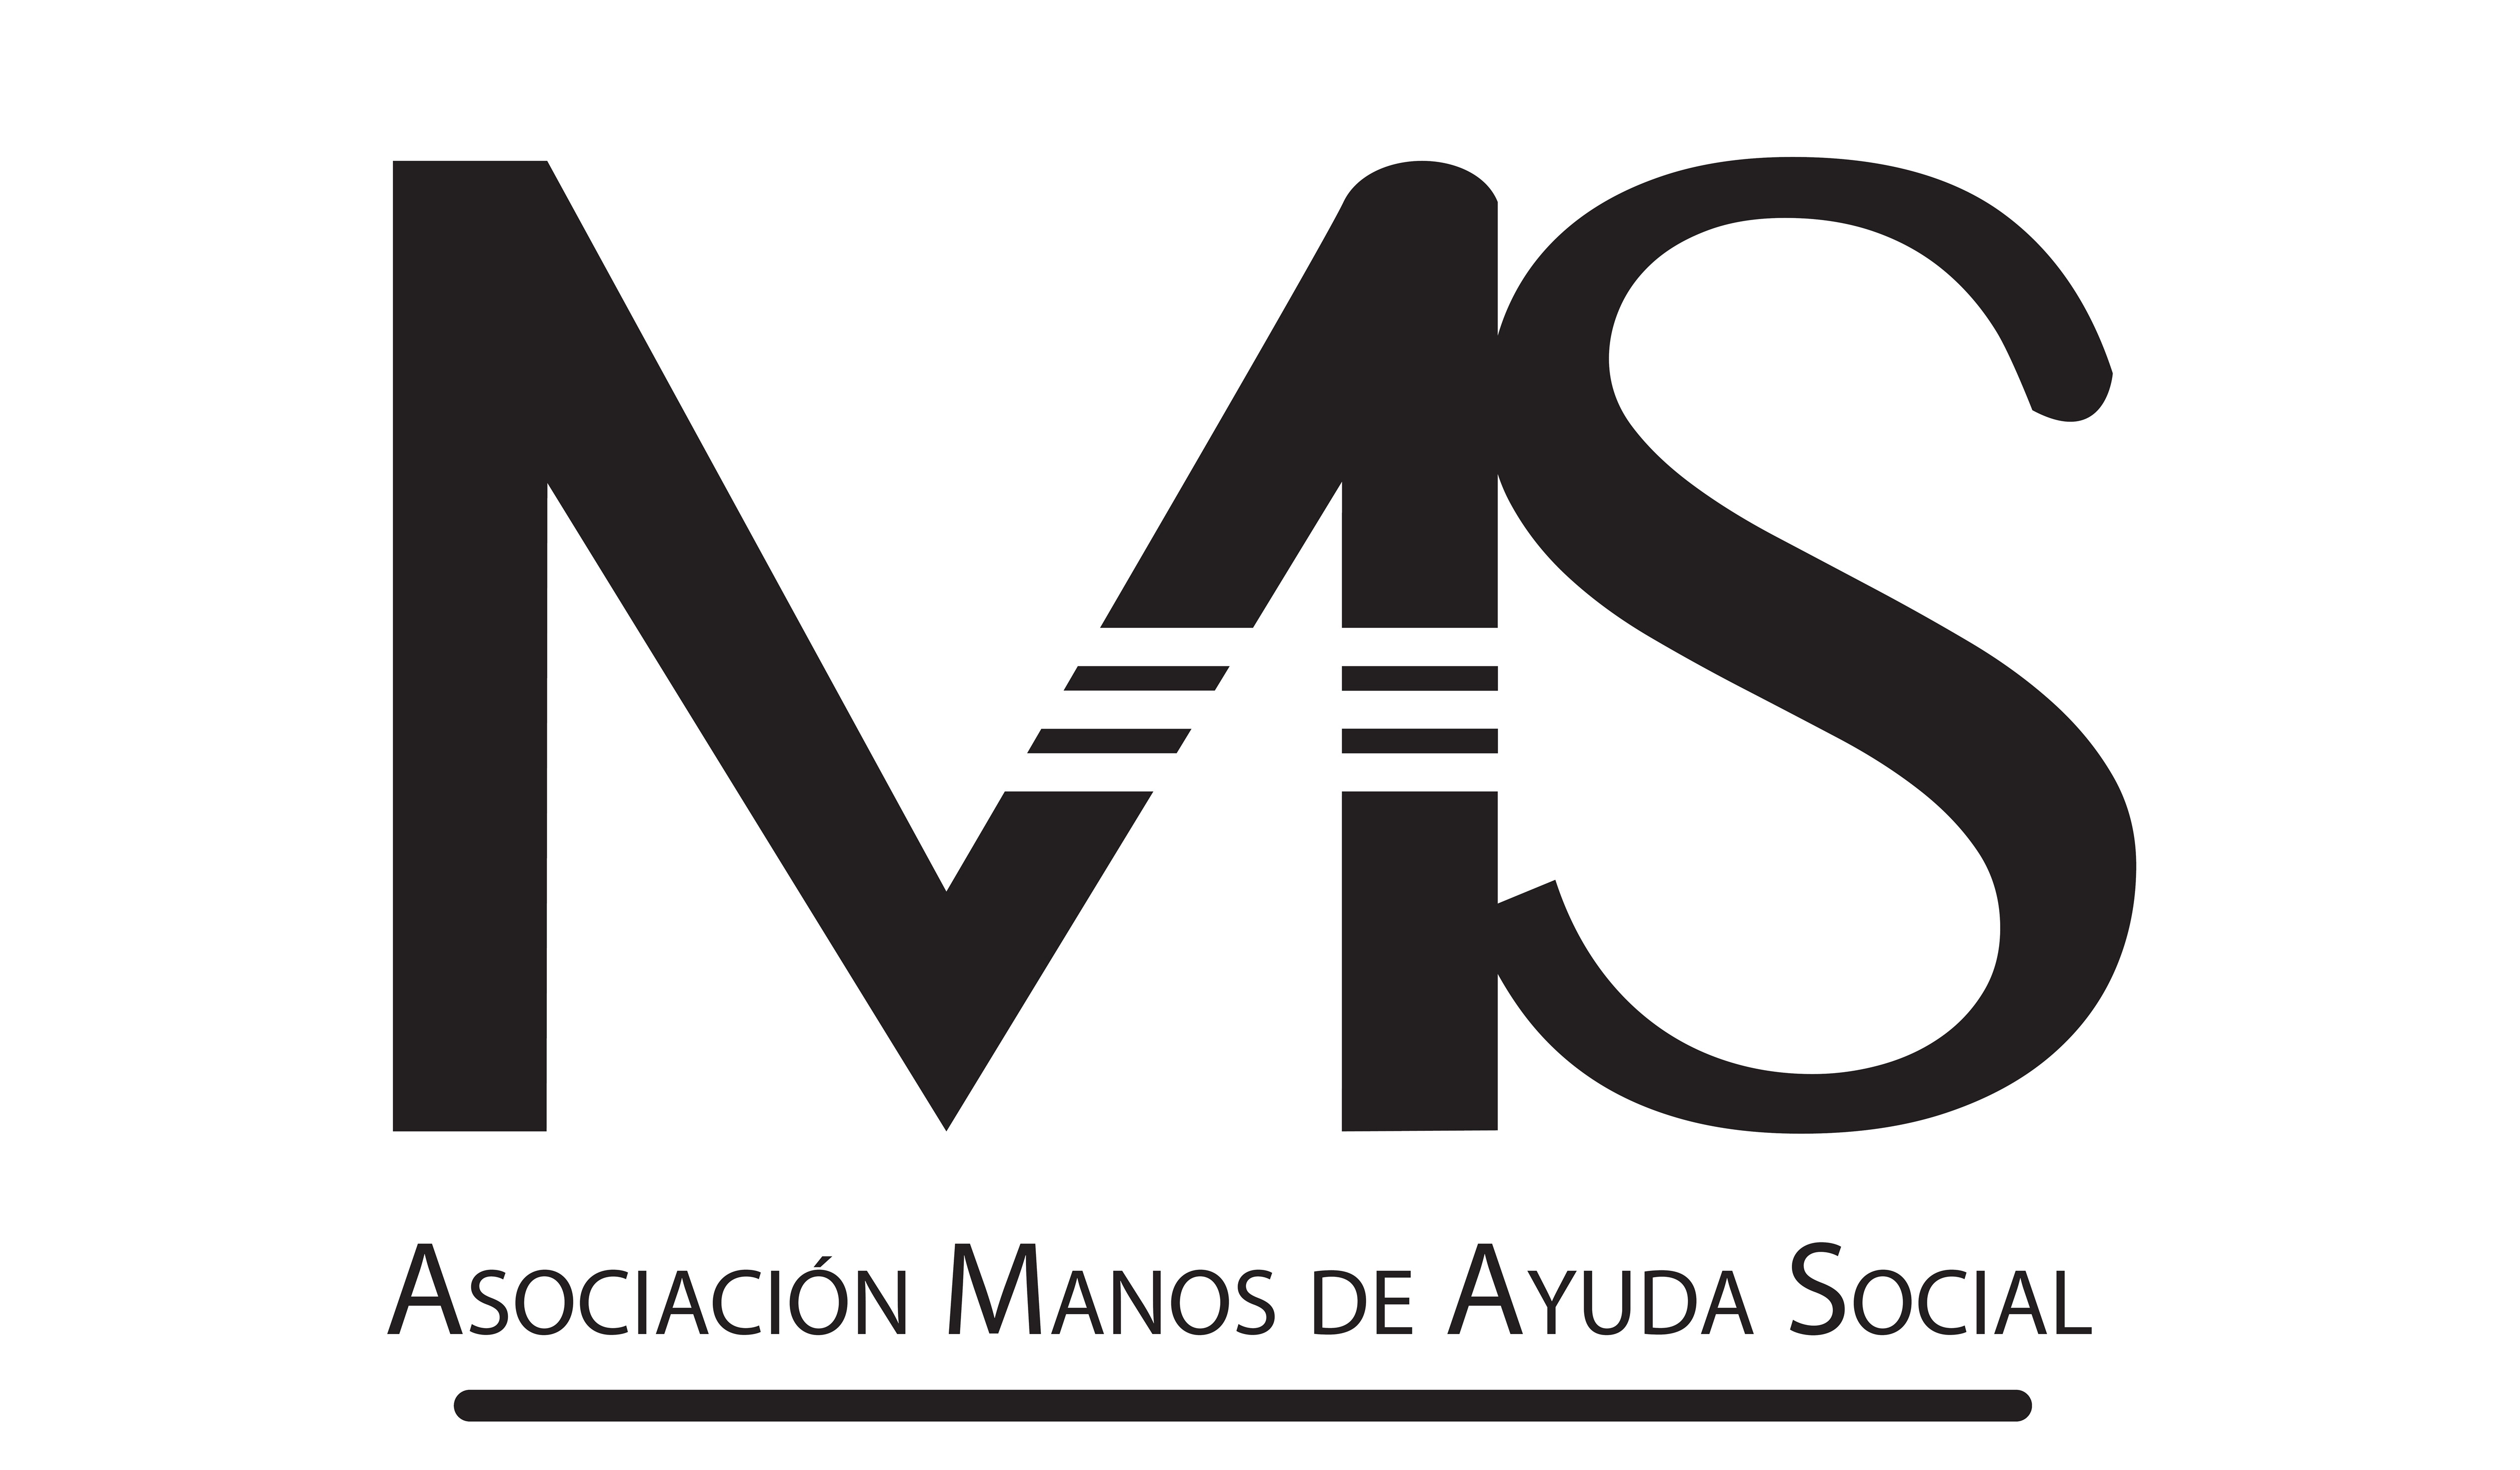 Asociación Manos de Ayuda Social logo